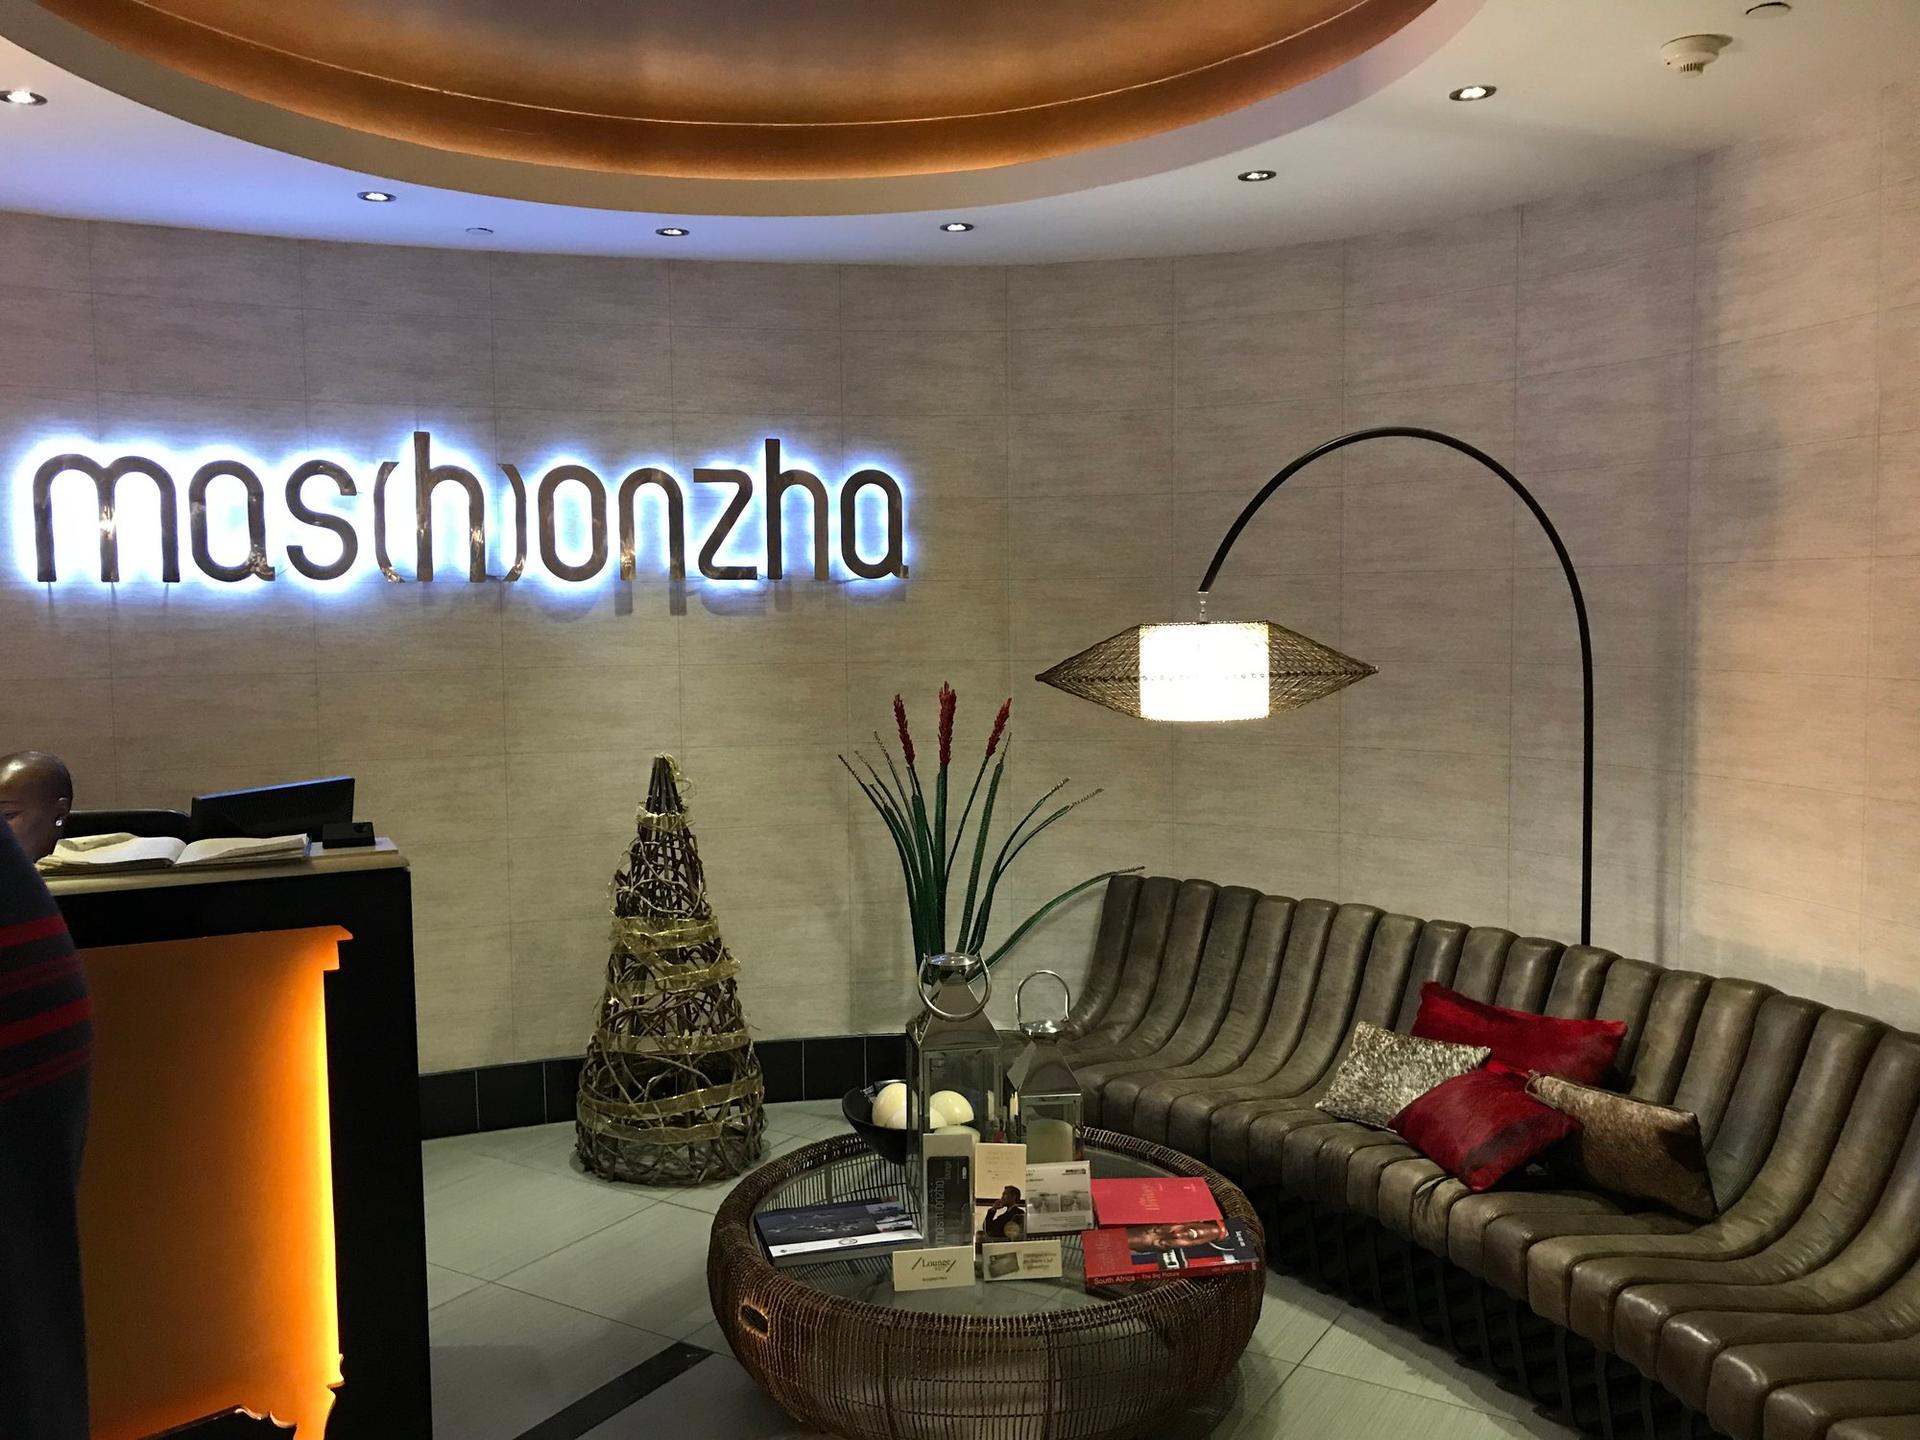 Mashonzha Lounge image 16 of 35